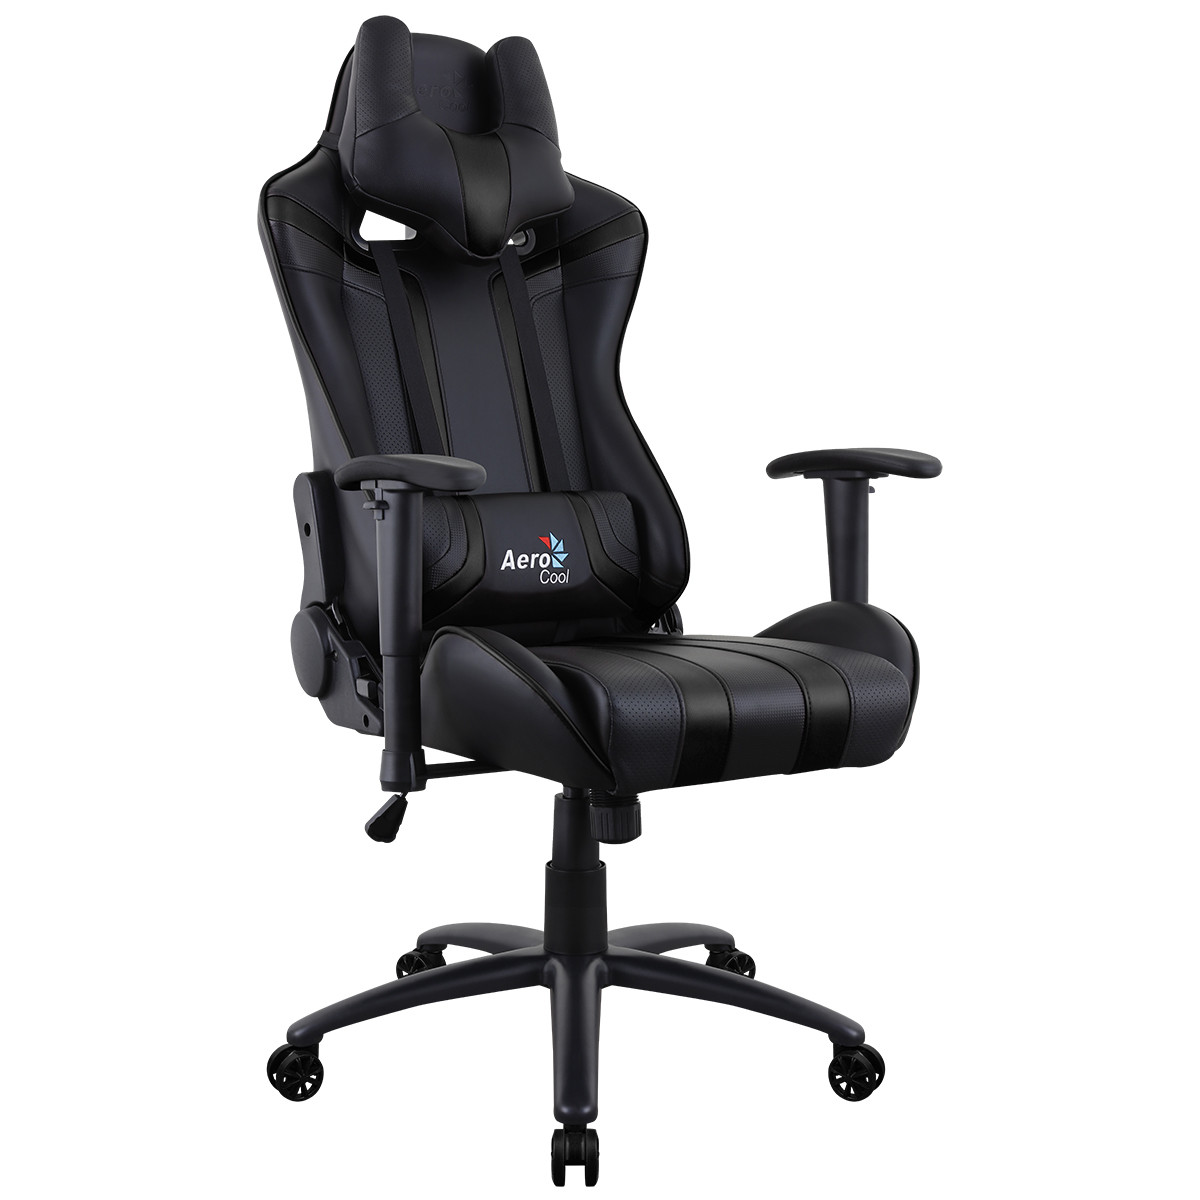  Aerocool  AC120 Air Black Gaming  Chair  with Air Technology 